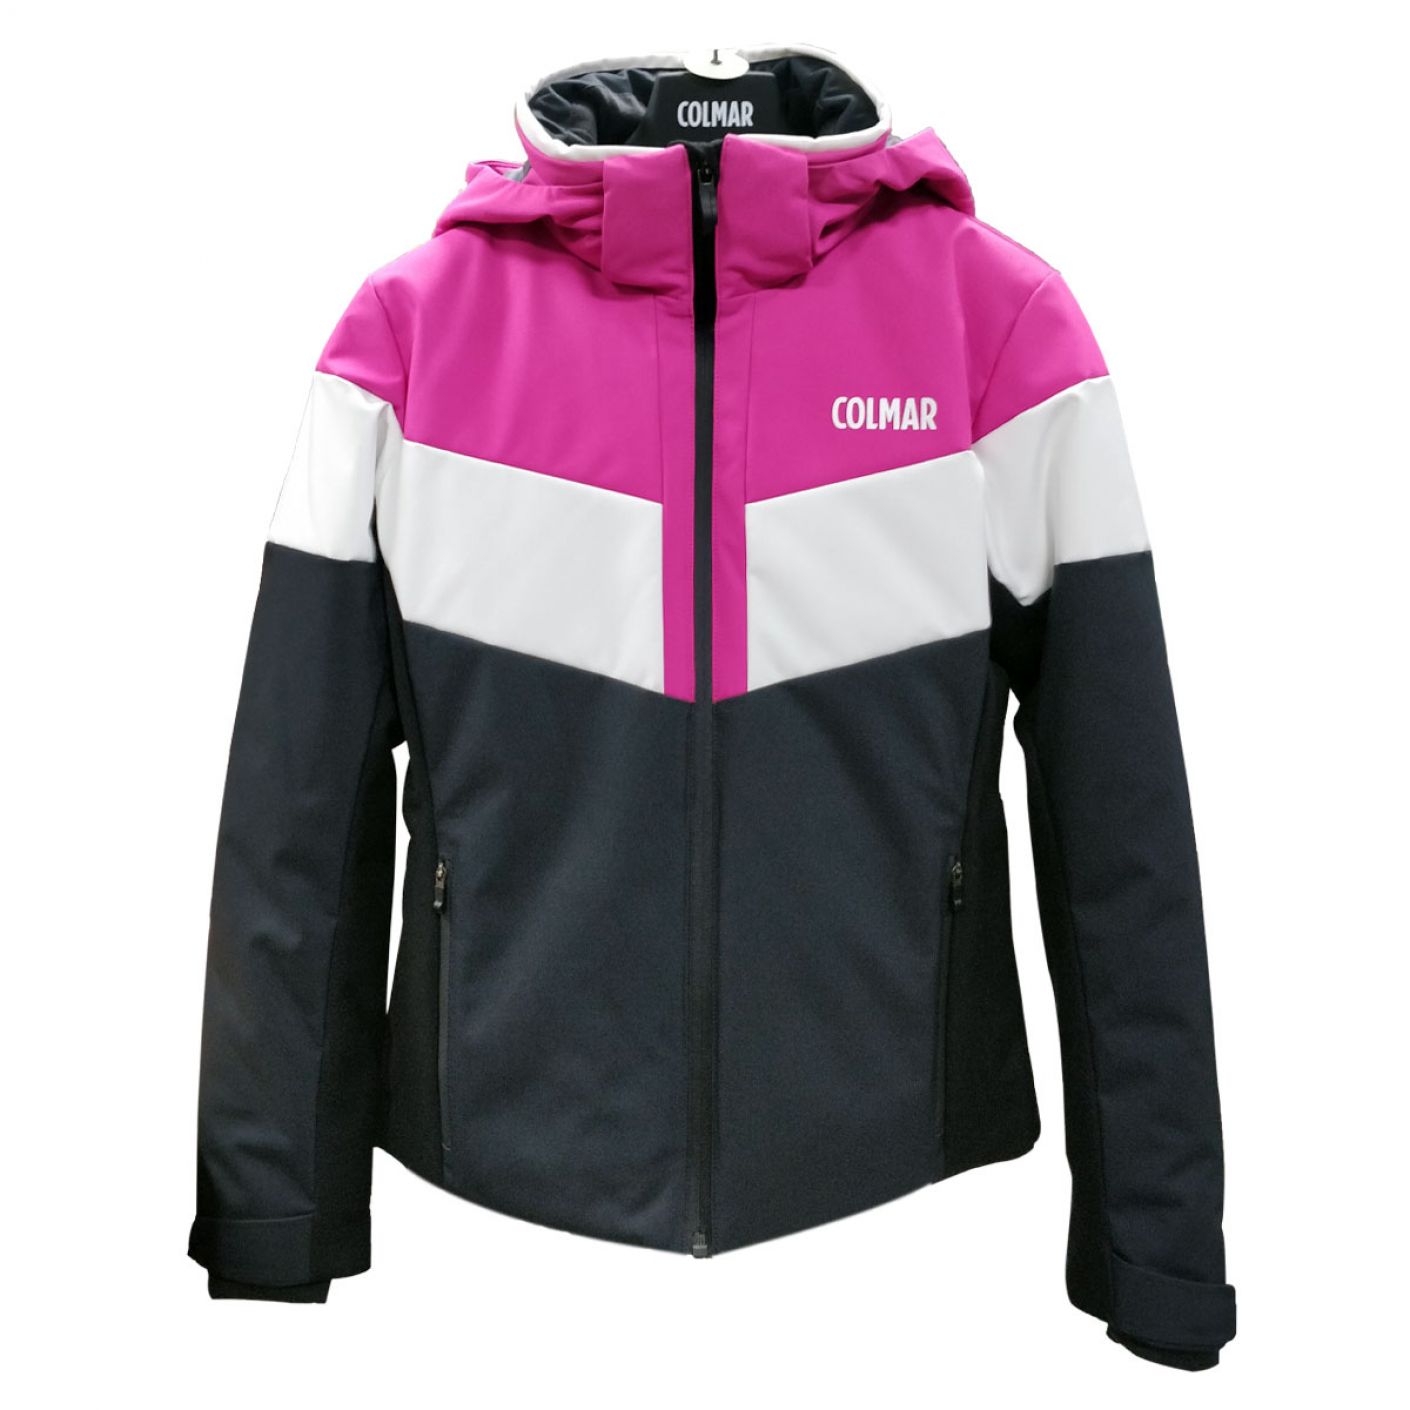 Colmar Girl's Colorblock Ski Suit 12-16 Years Pink-Black